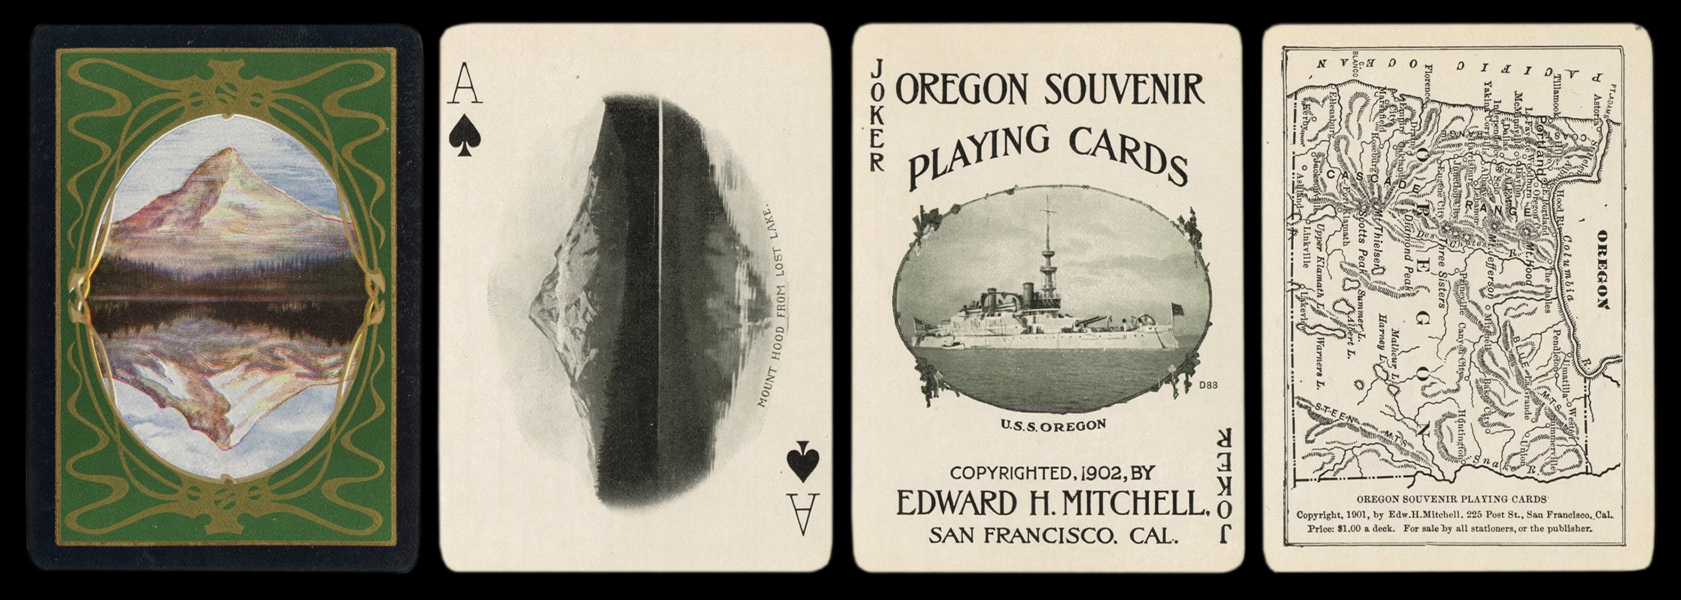  [Oregon] Oregon Souvenir Playing Cards. San Francisco: Edwa...